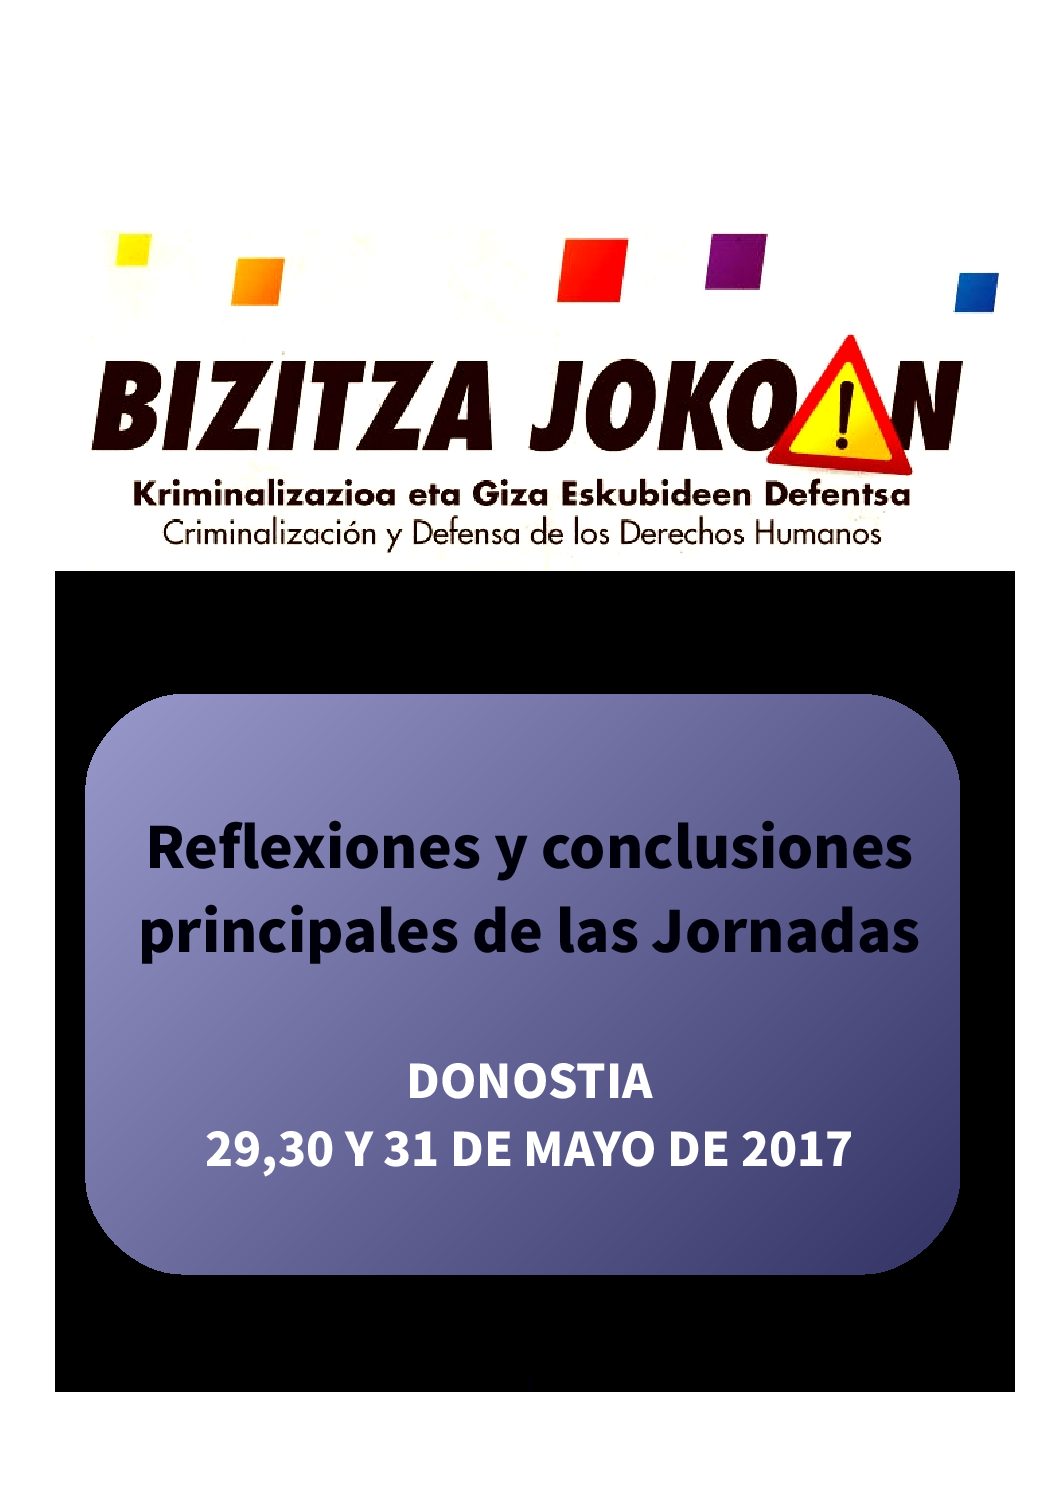 Jornadas “Bizitza Jokoan: Criminalización y defensa de derechos humanos”